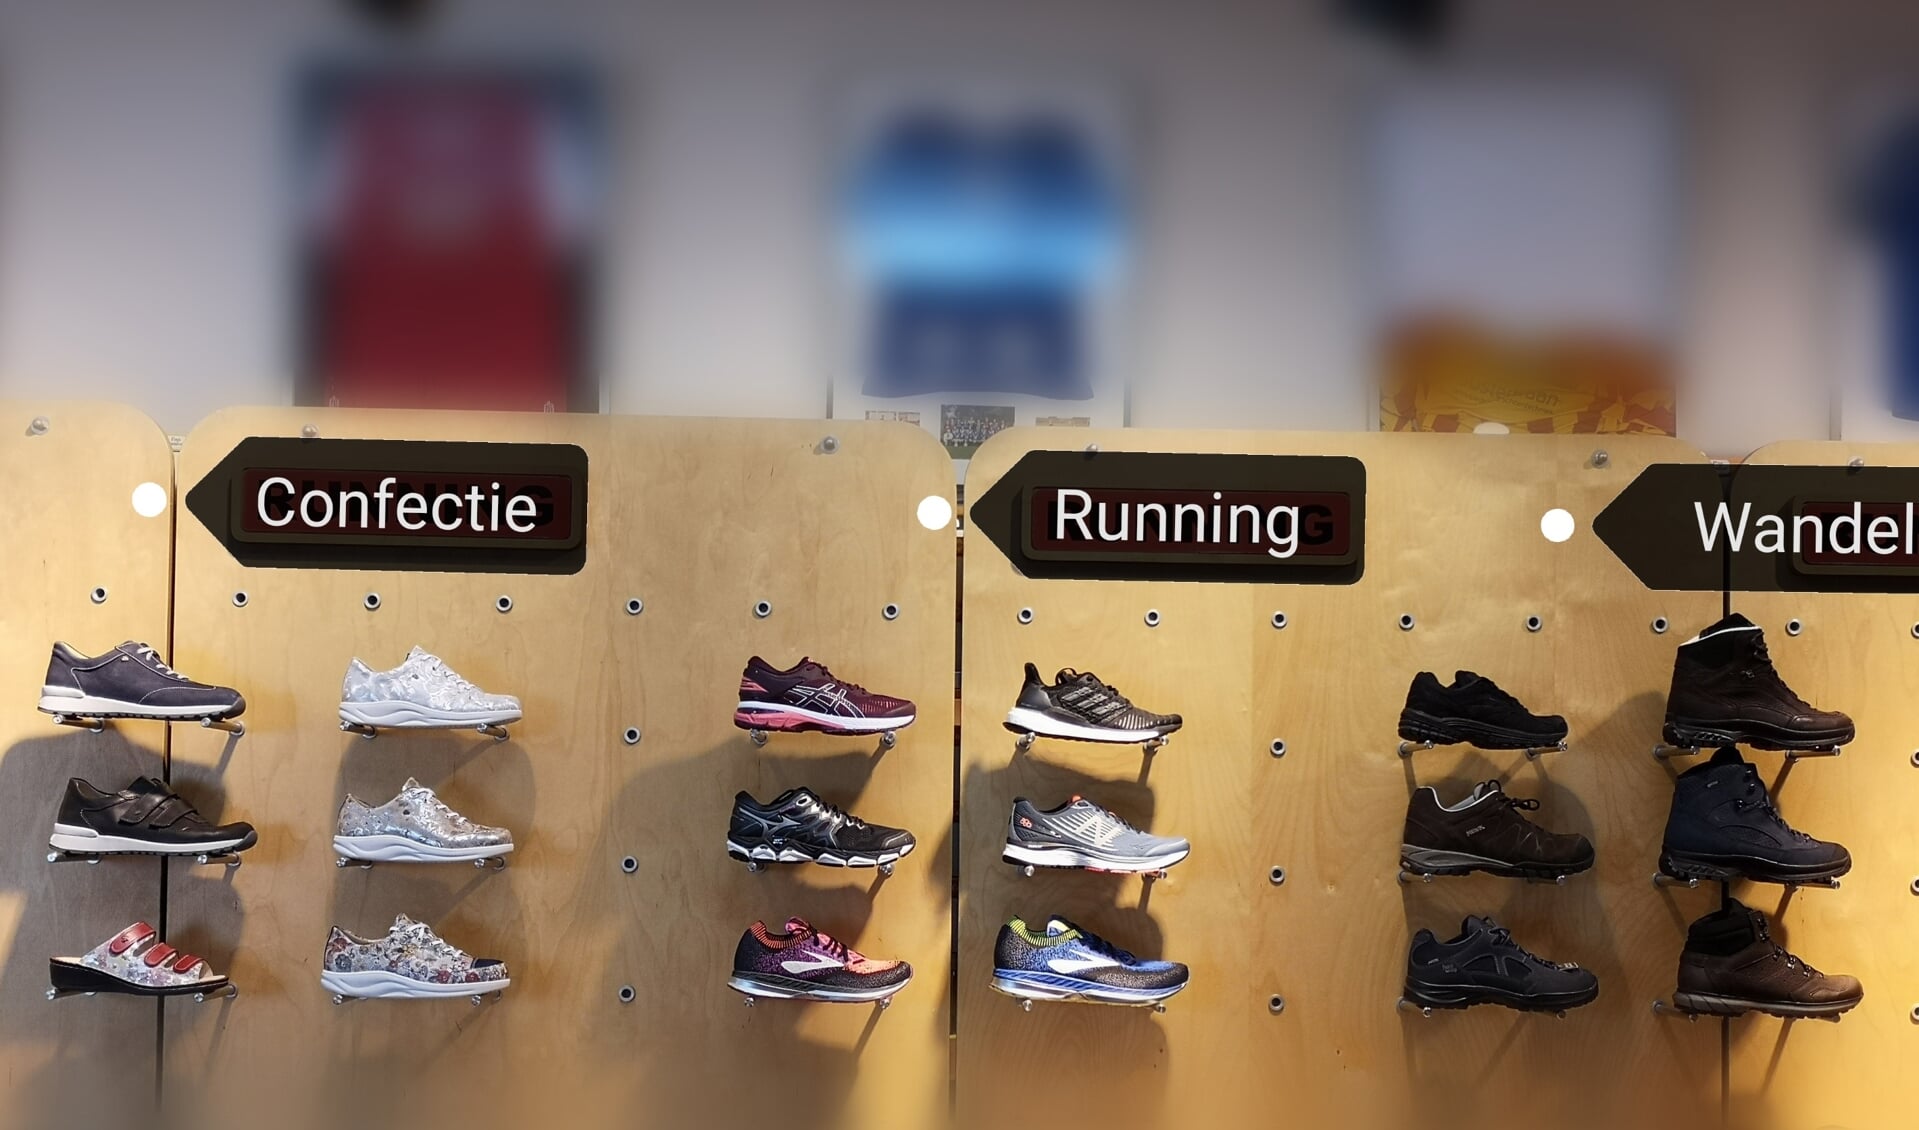 Therapie Wolf en Oosterbaan sport- en wandelschoenen houden samen een schoenenbeurs.